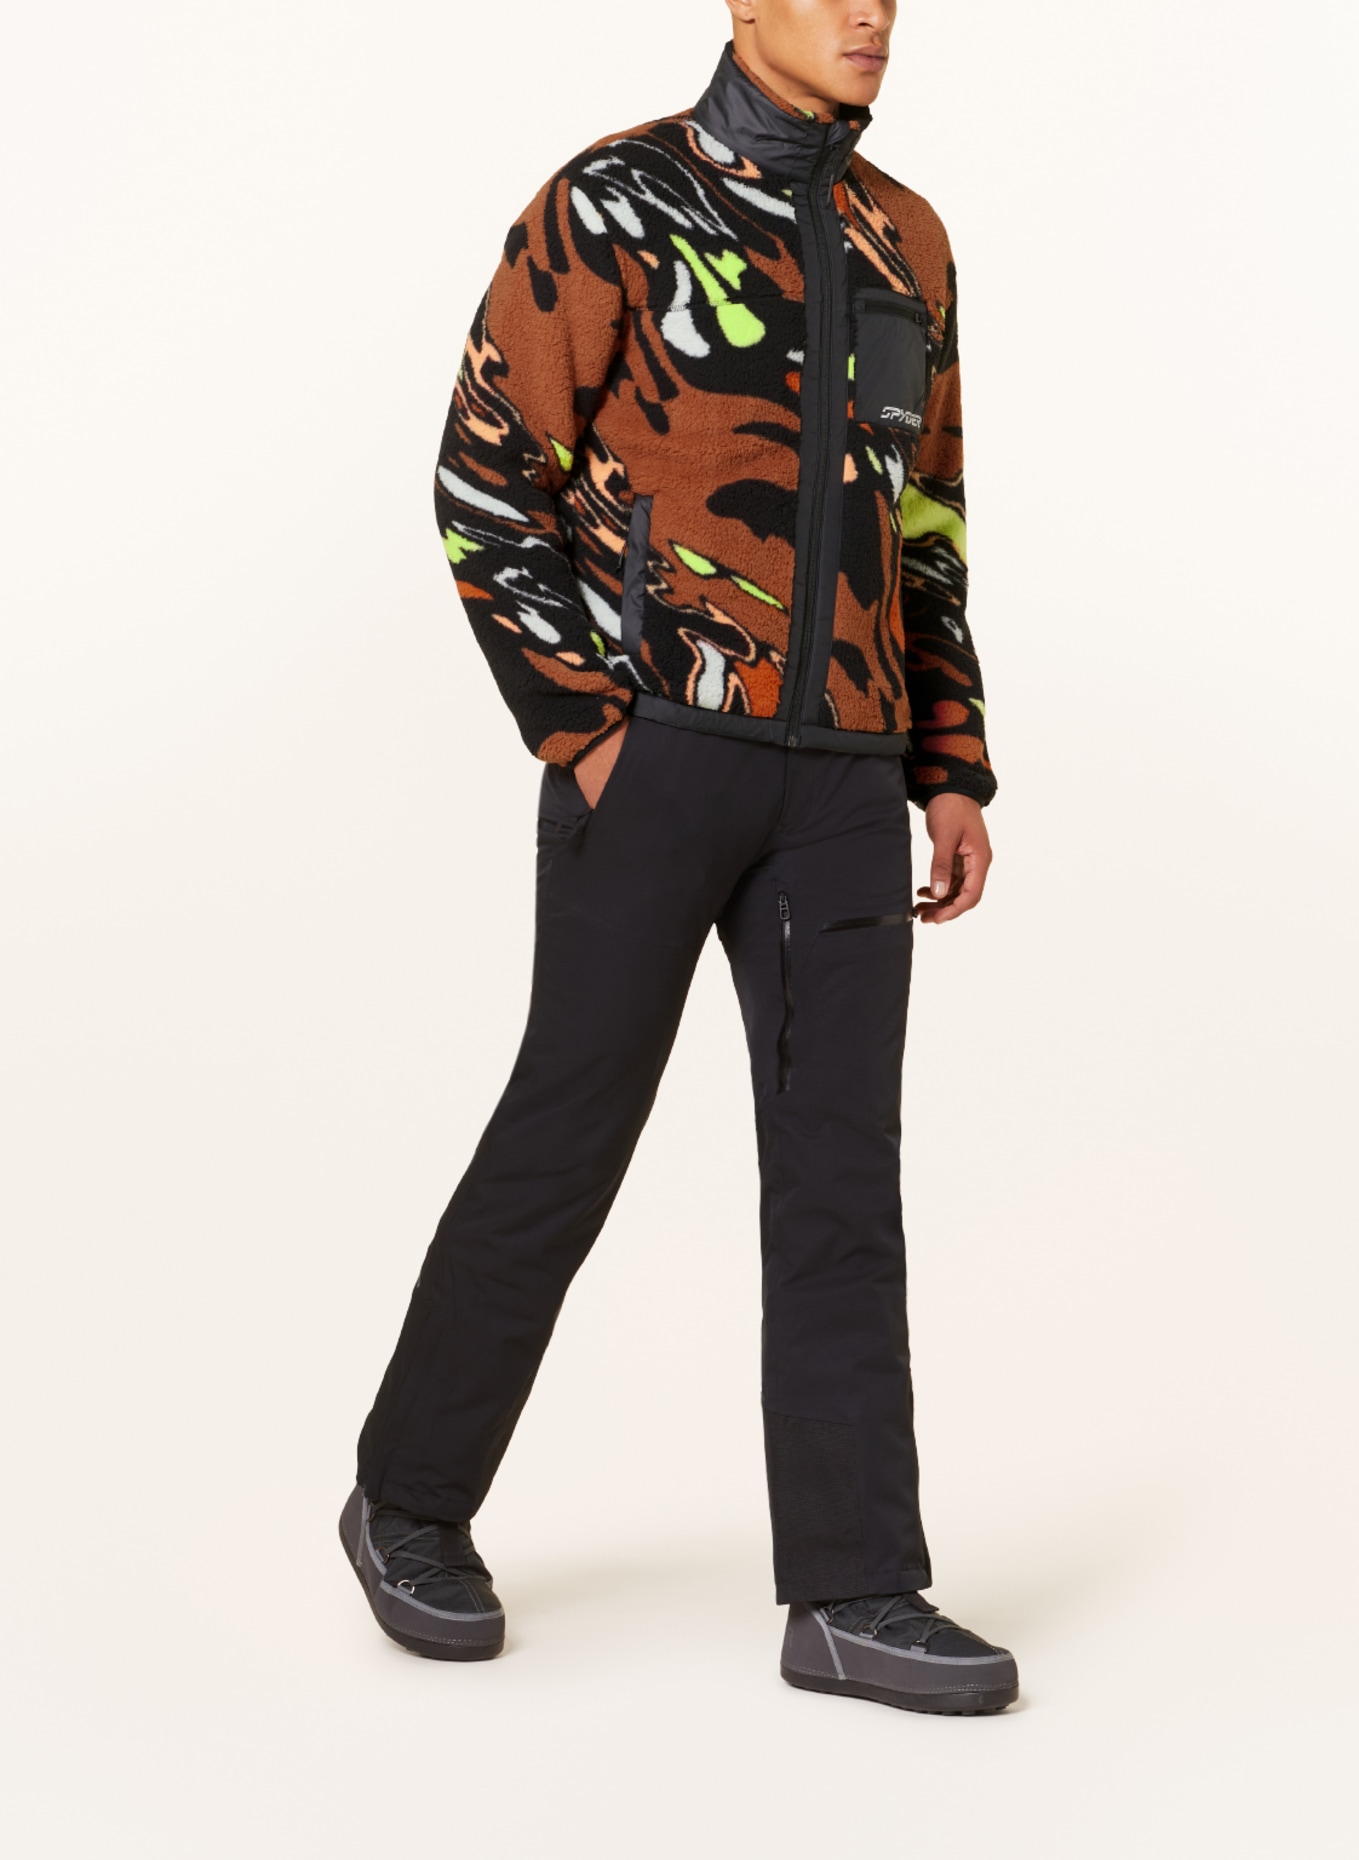 SPYDER Hybrid fleece jacket SHERMAN in black/ orange